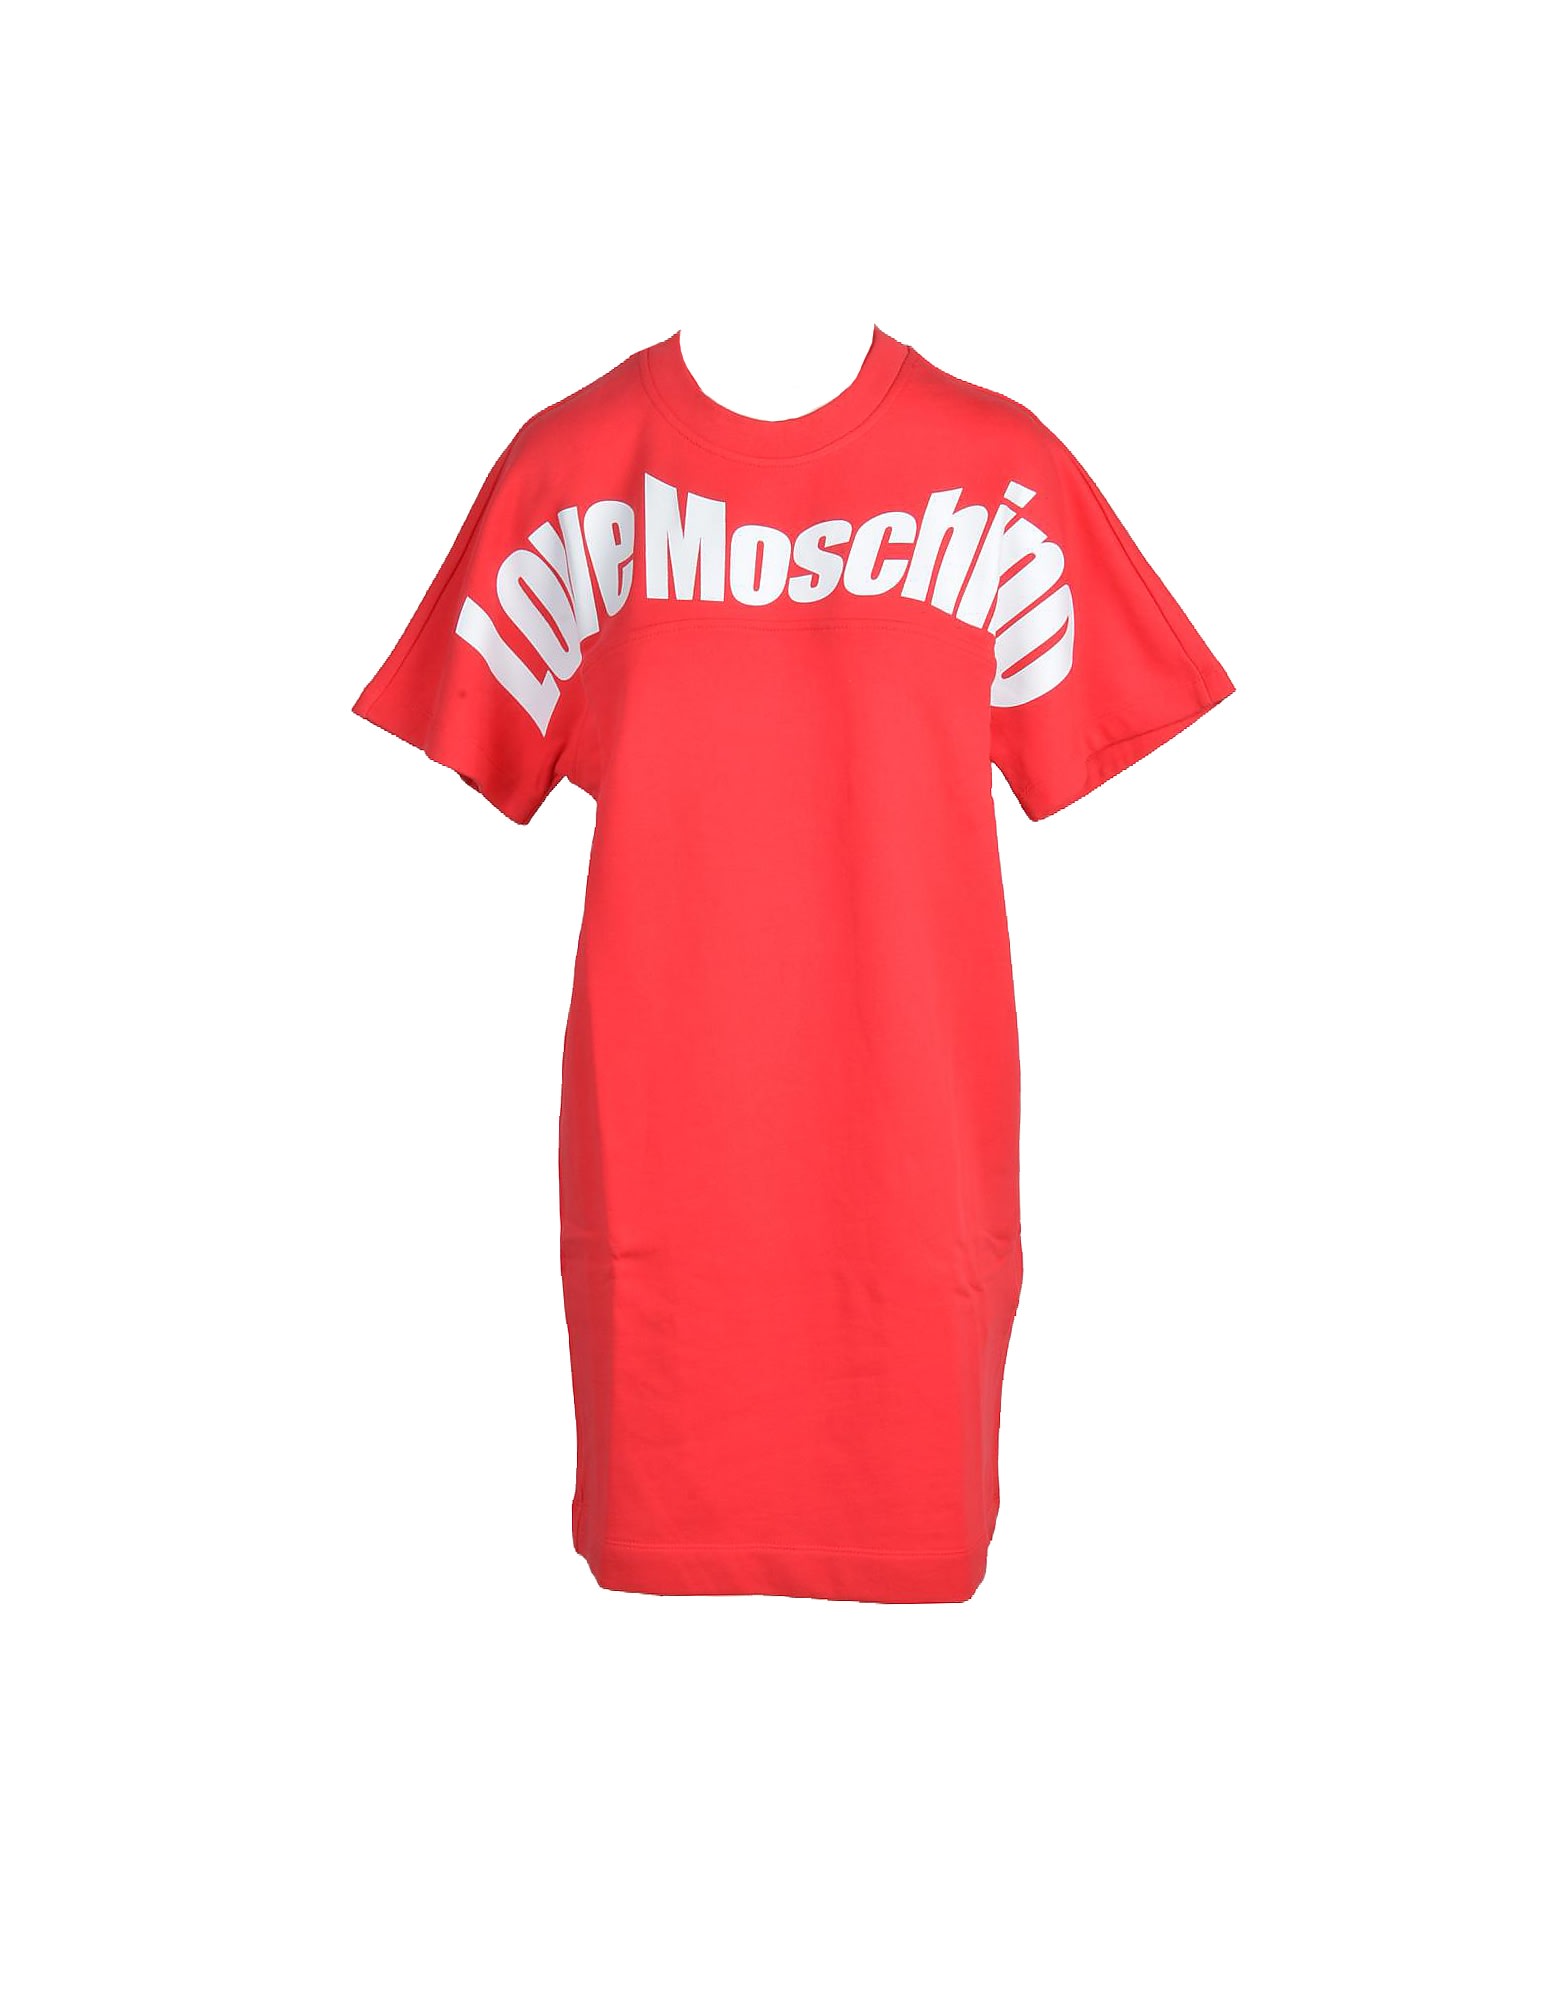 Love Moschino Womens Red Dress